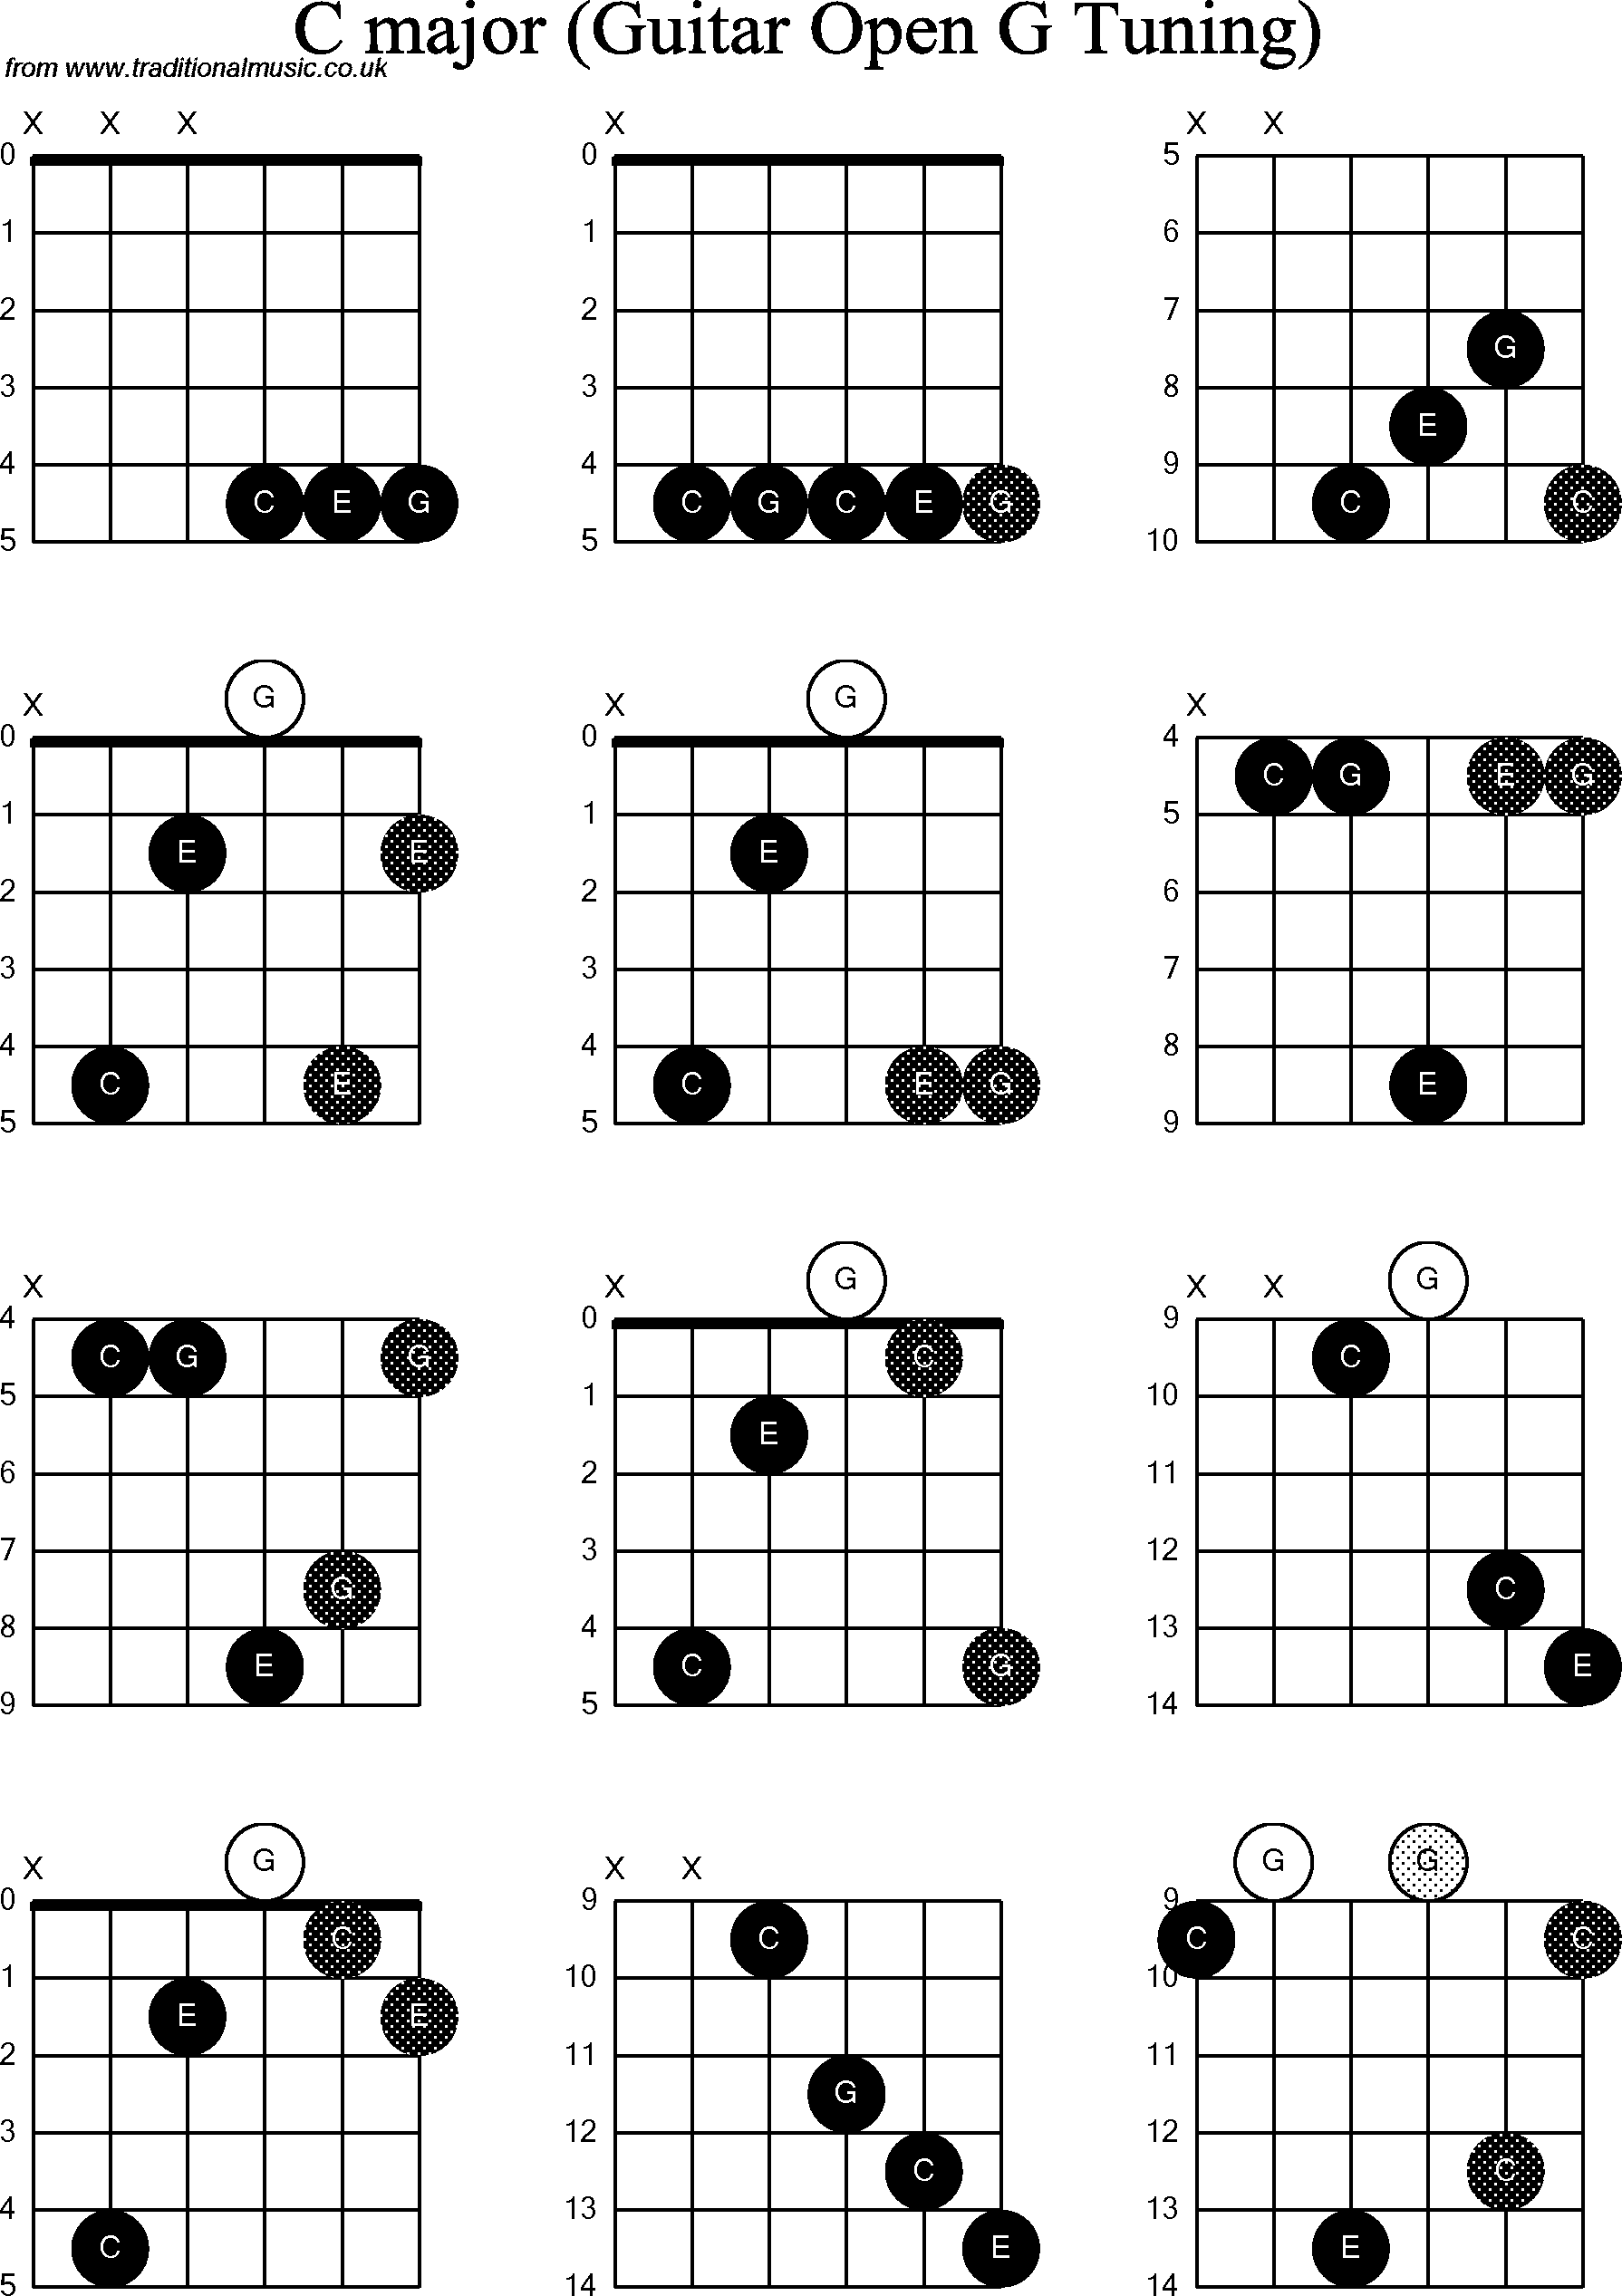 Chord diagrams for Dobro C